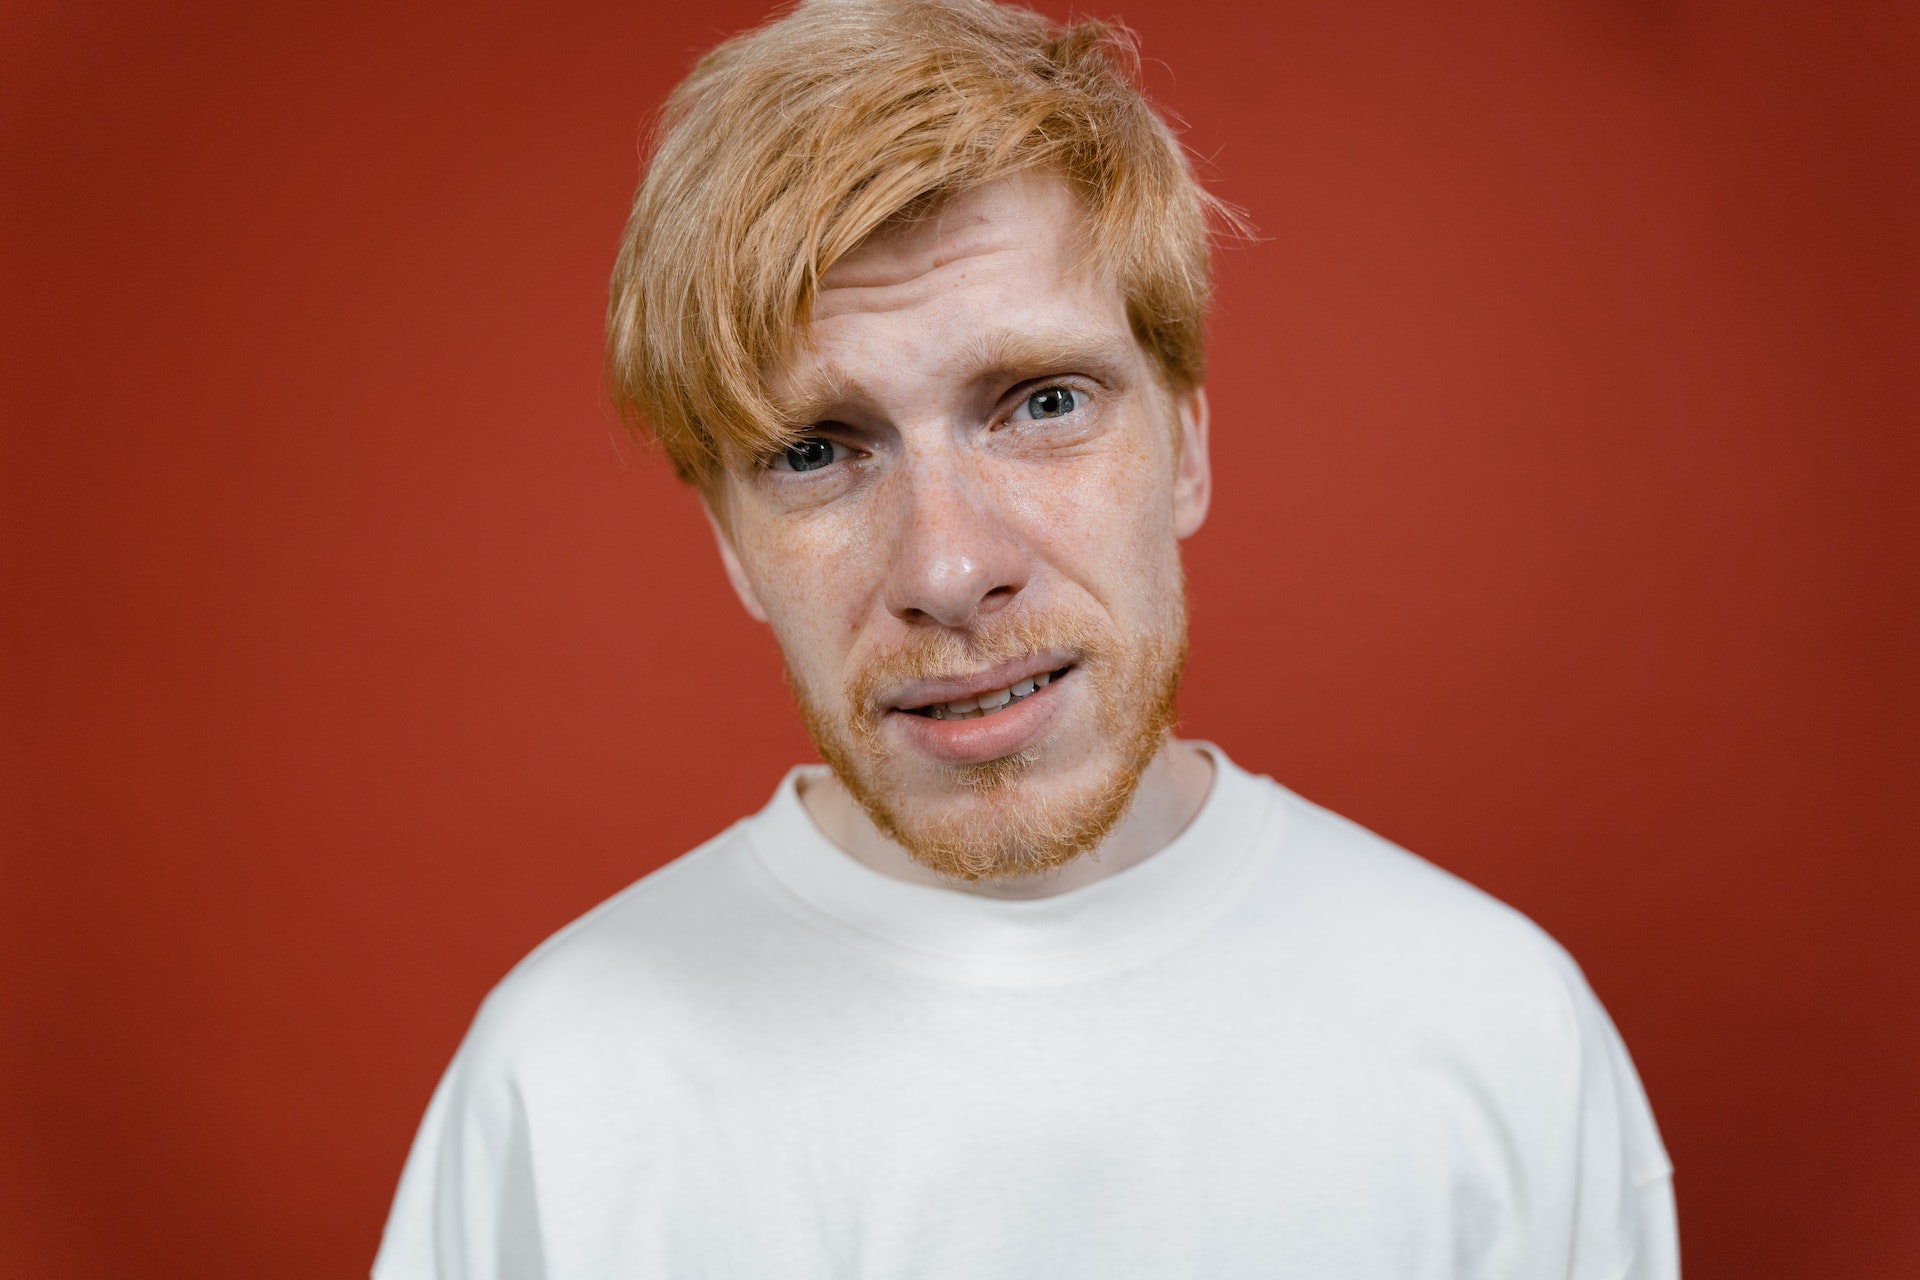 Uomo con barba e capelli rossi